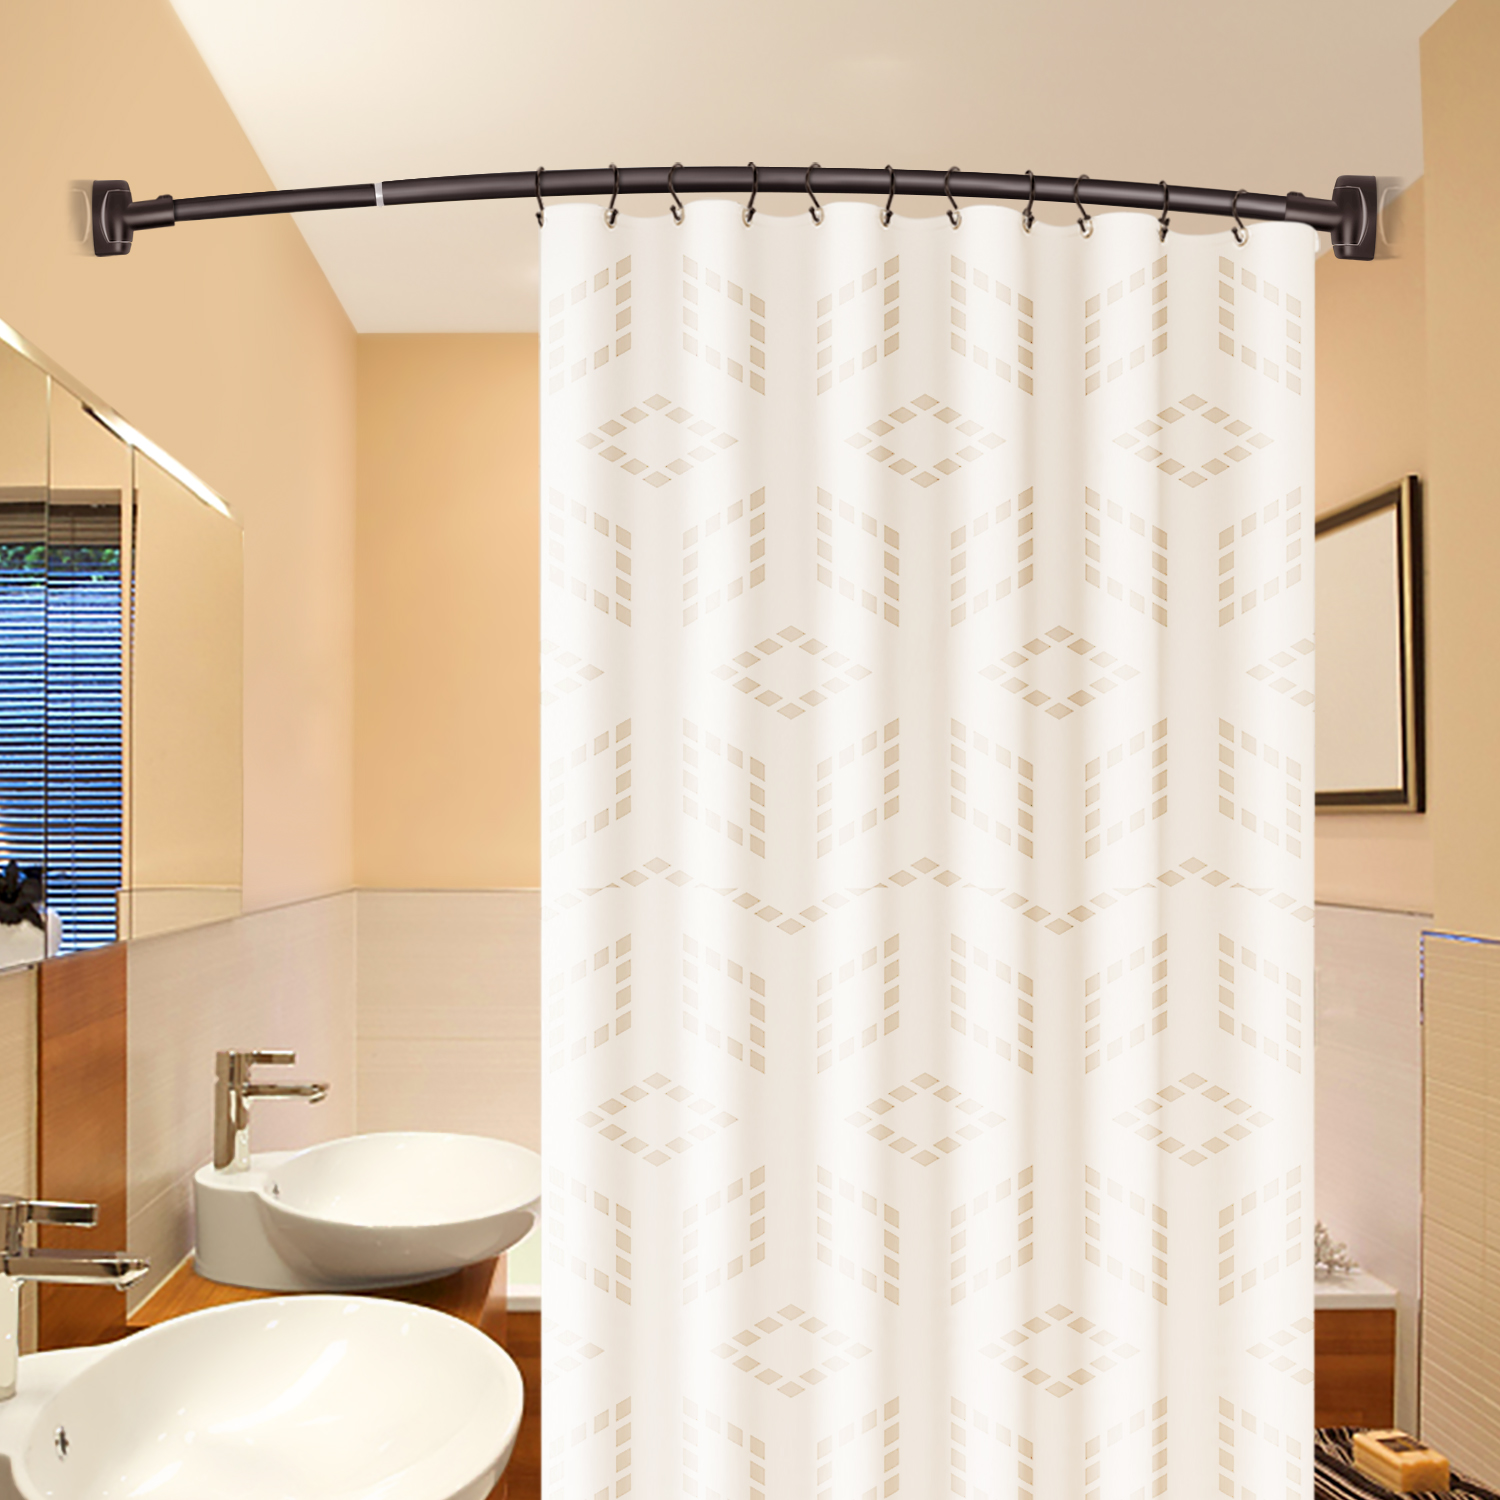 Venta al por mayor de bronce estirable 304 inoxidable curvado baño bañera esquina cortina de ducha estante (50 '-72 ')